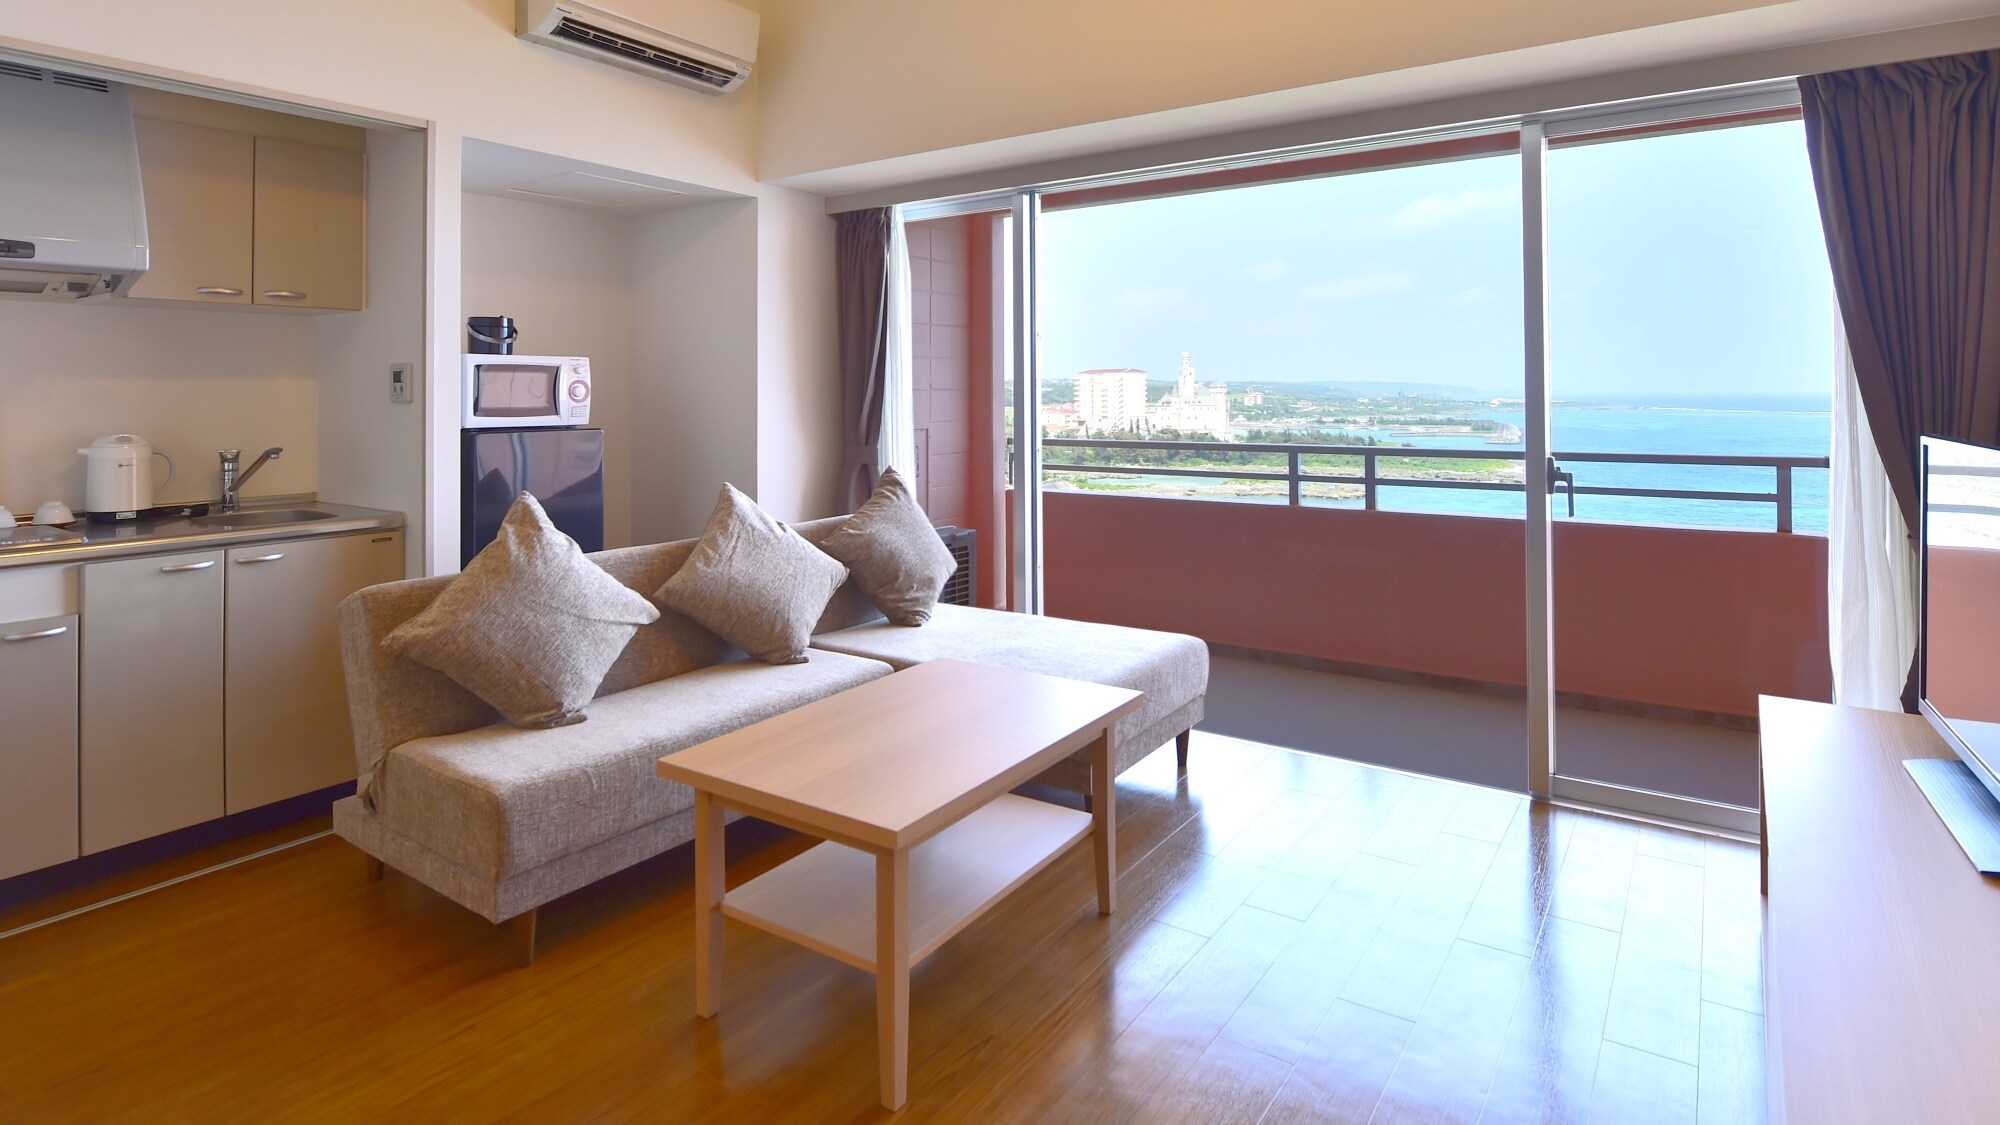 [Tipe B Kamar bergaya Jepang-Barat] Dengan total kamar dan balkon seluas 57 meter persegi, Anda dapat menghabiskan waktu dengan nyaman.